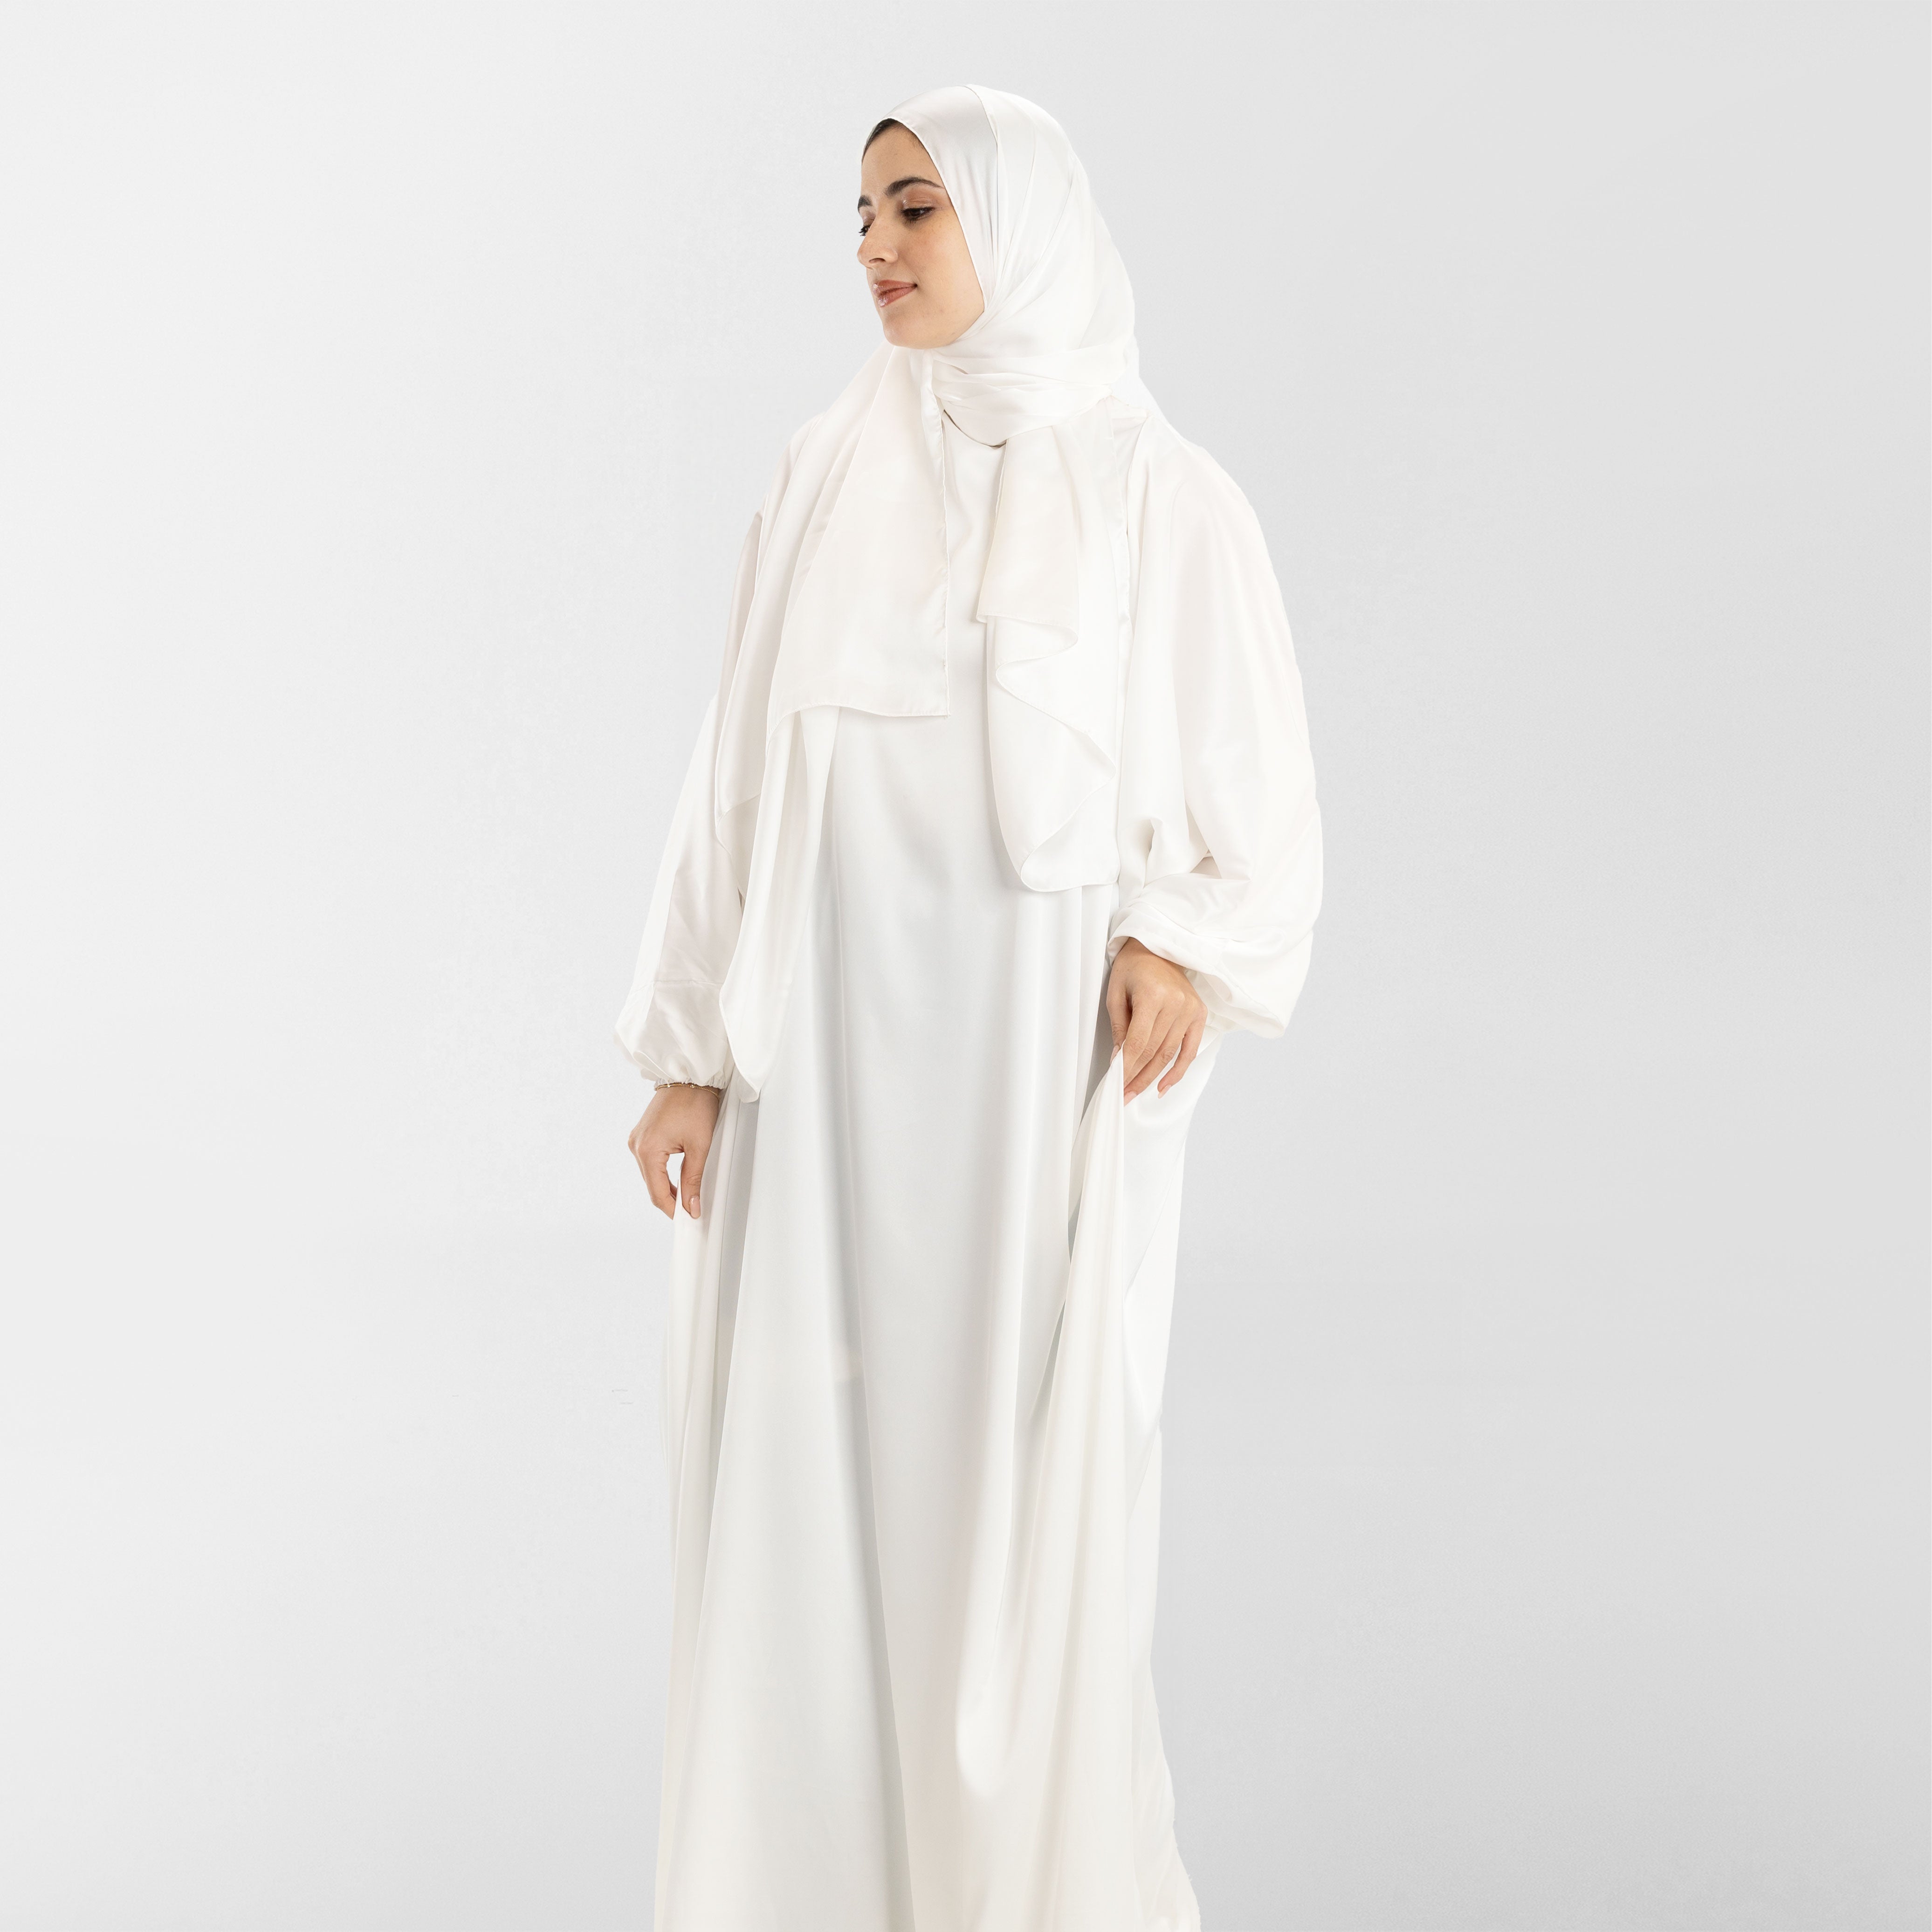 Prayer Wear - Isdal FULL WHITE